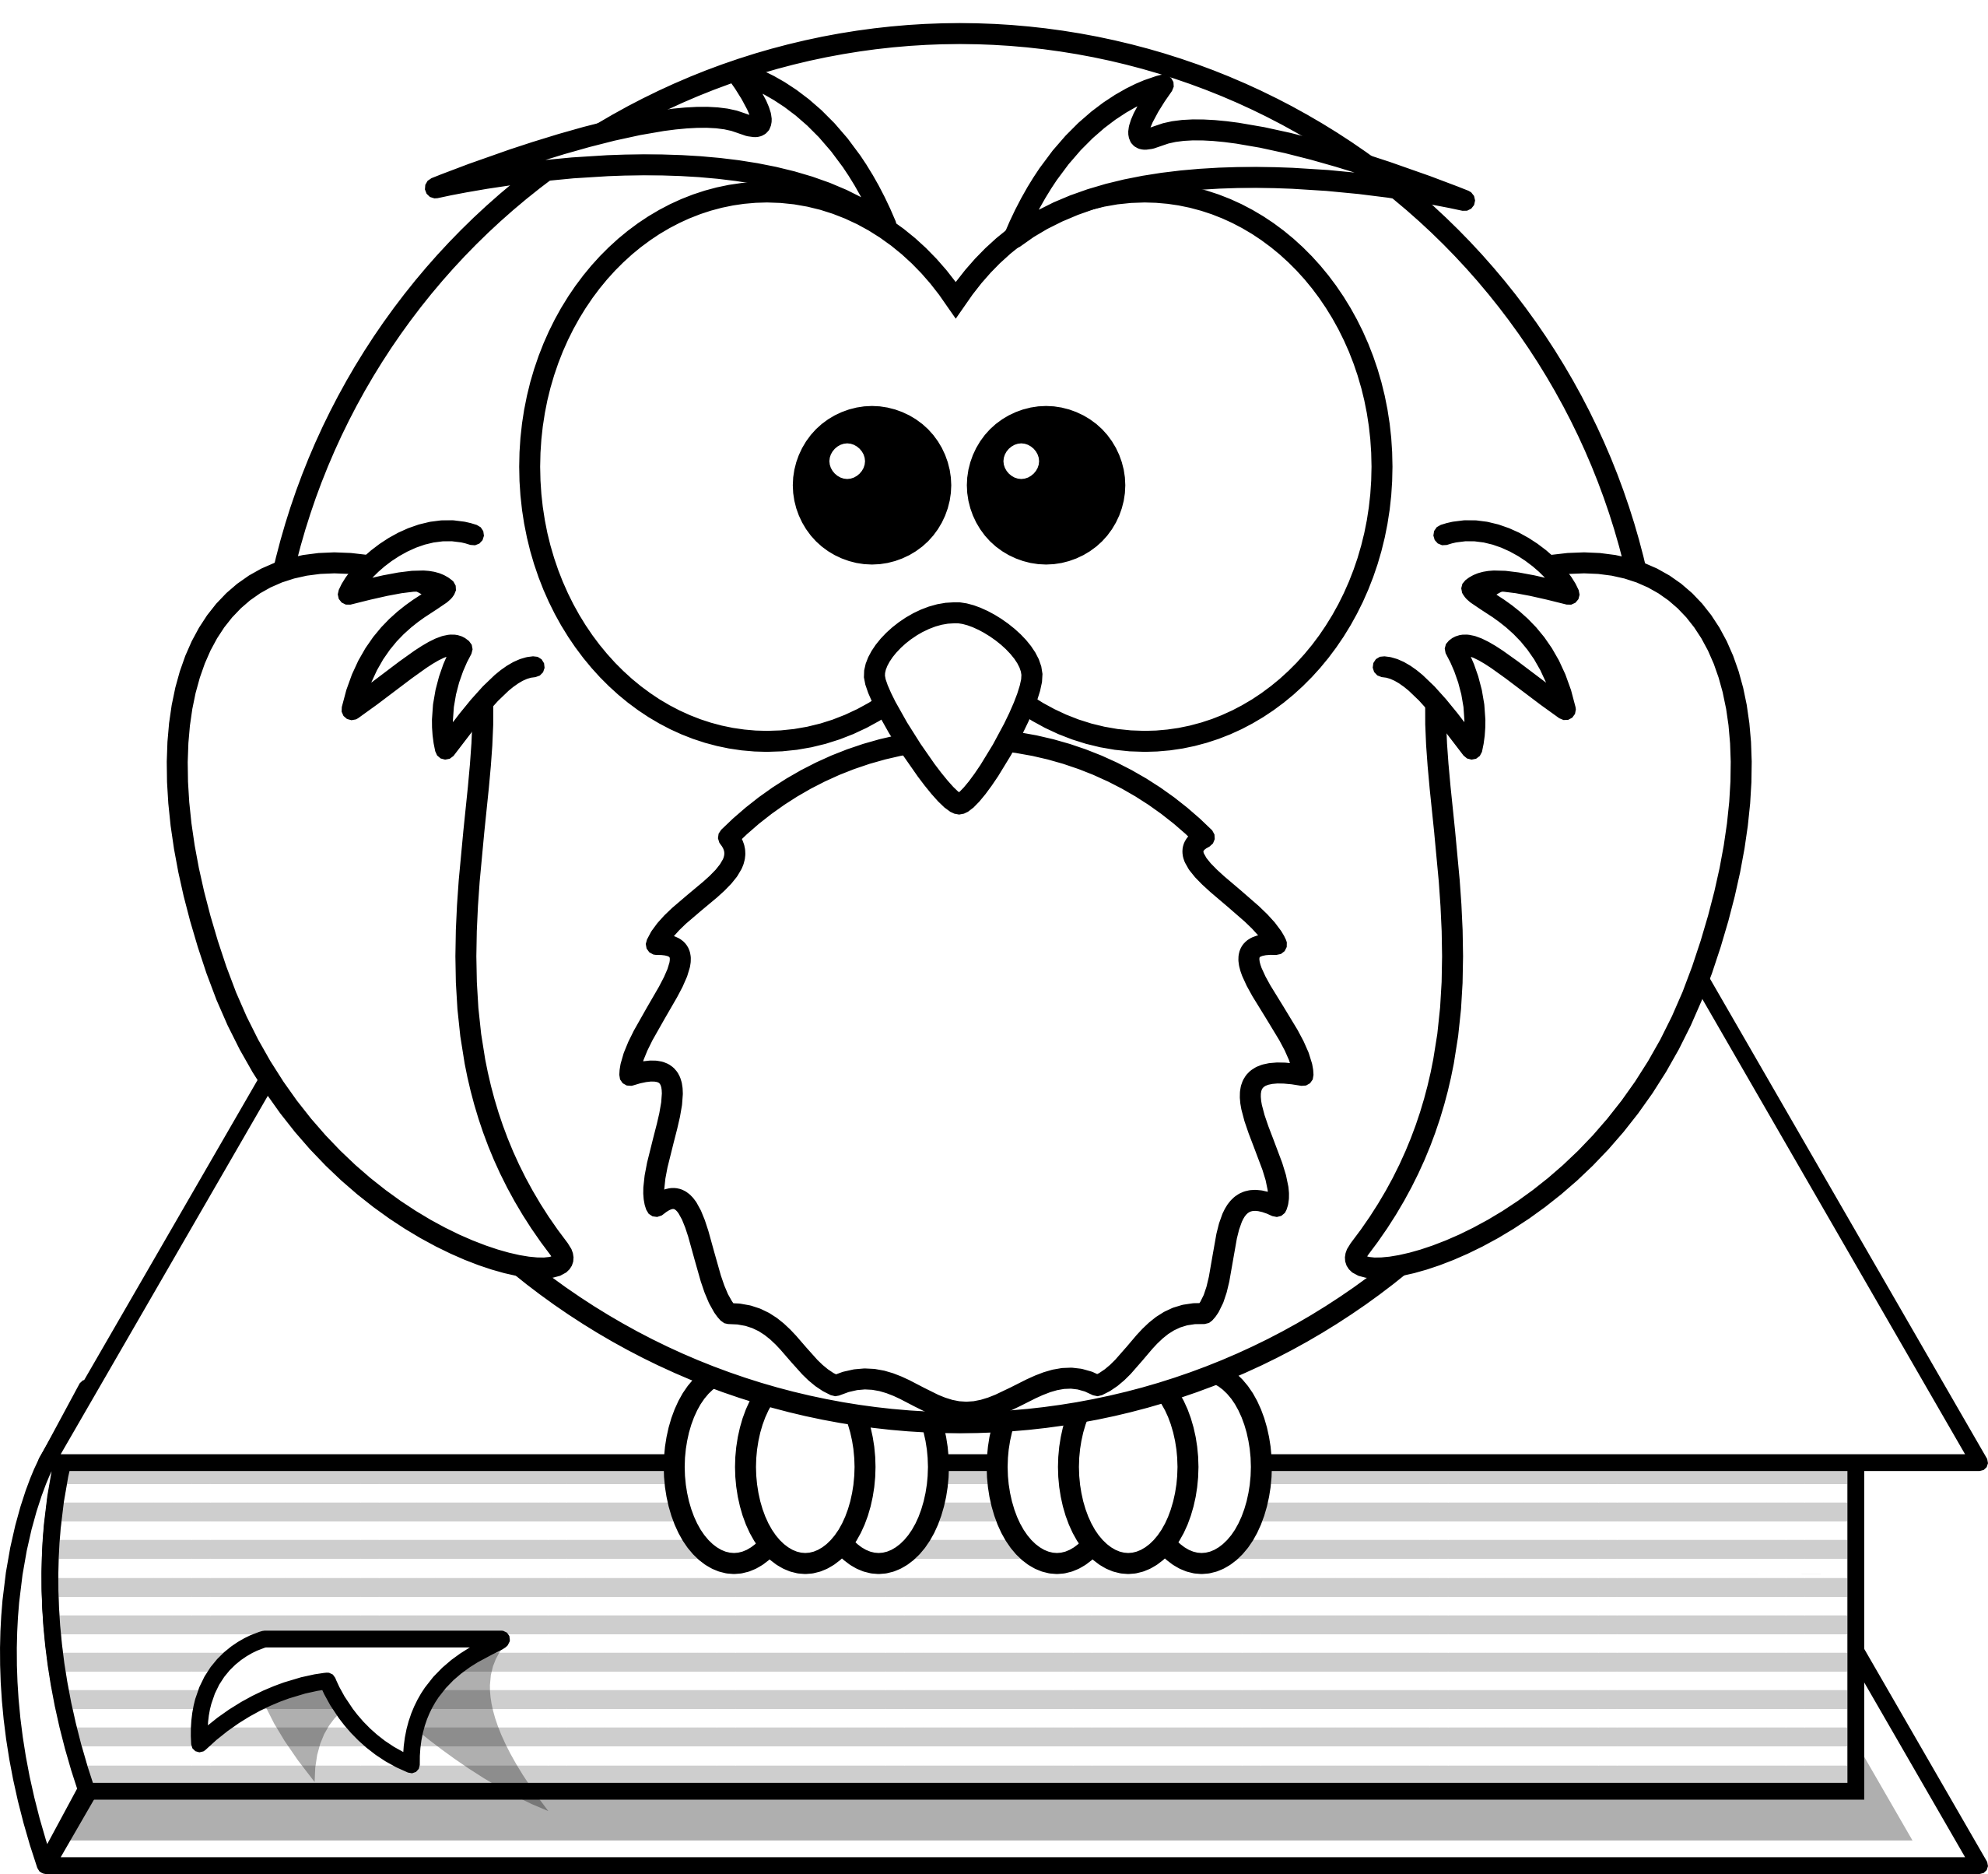 clipartist.net � Clip Art � Lemmling Cartoon Owl Sitting on a Book 